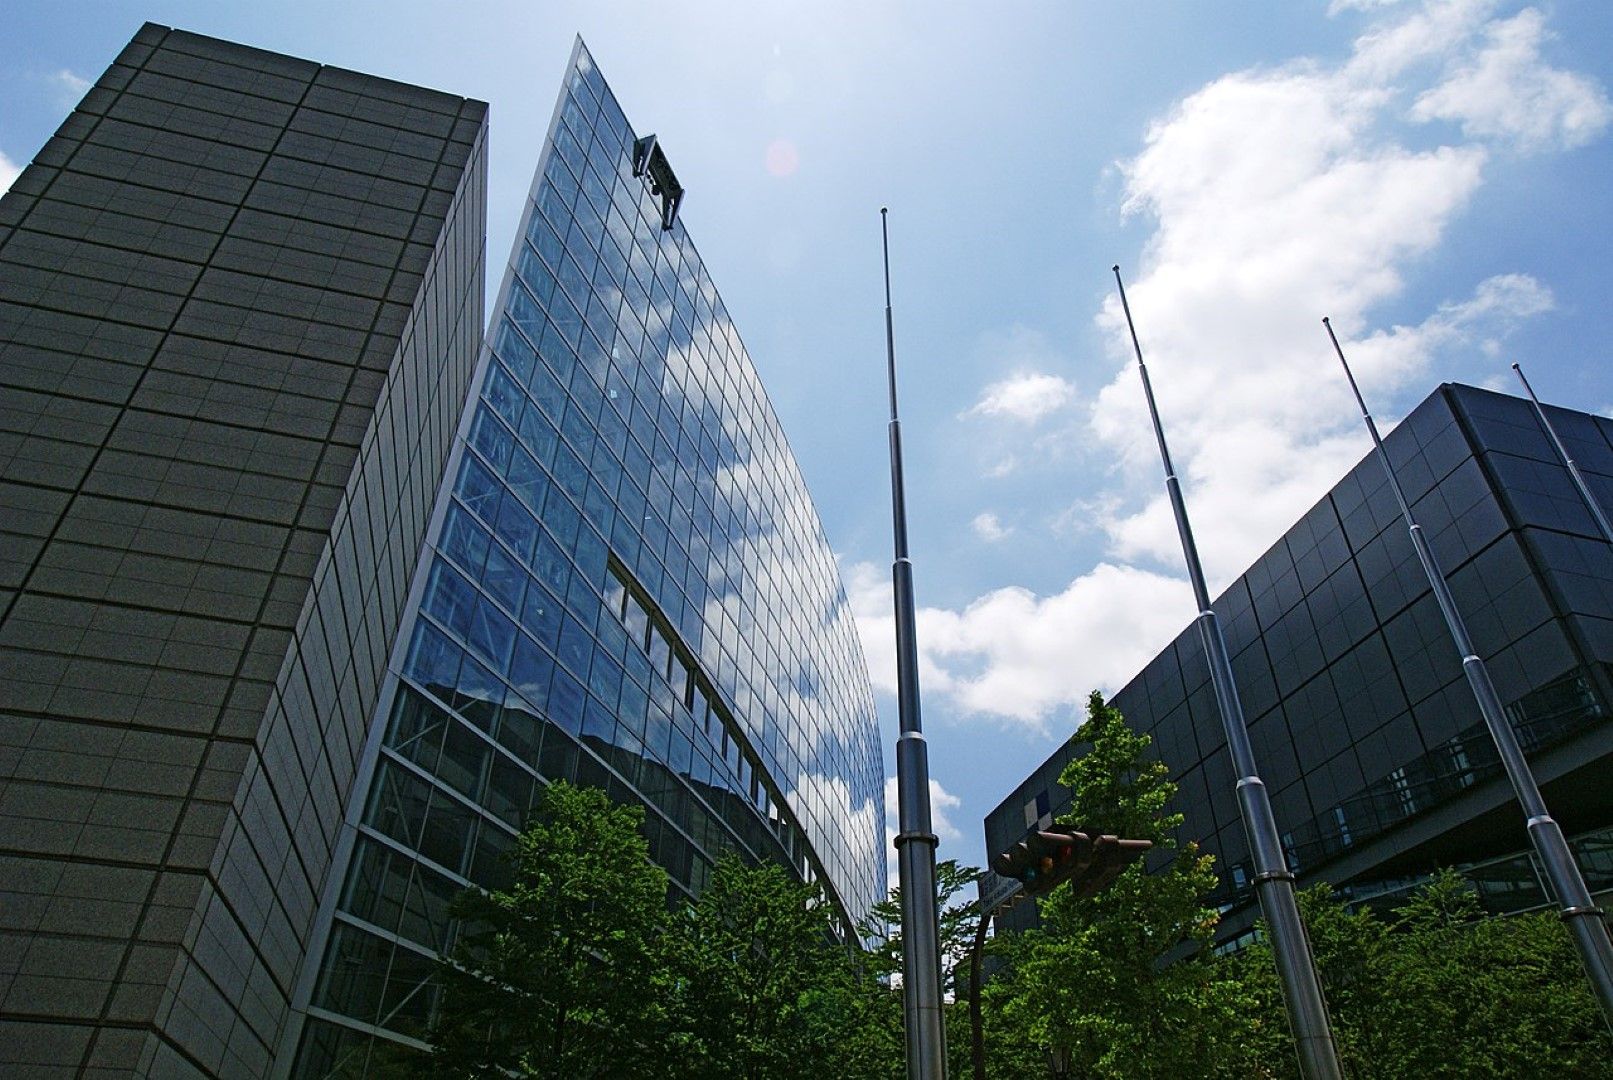 Tokyo Big Sight - една от забележителностите на града, изложбен и конферентен център, който се превръща в медиен център за игрите.